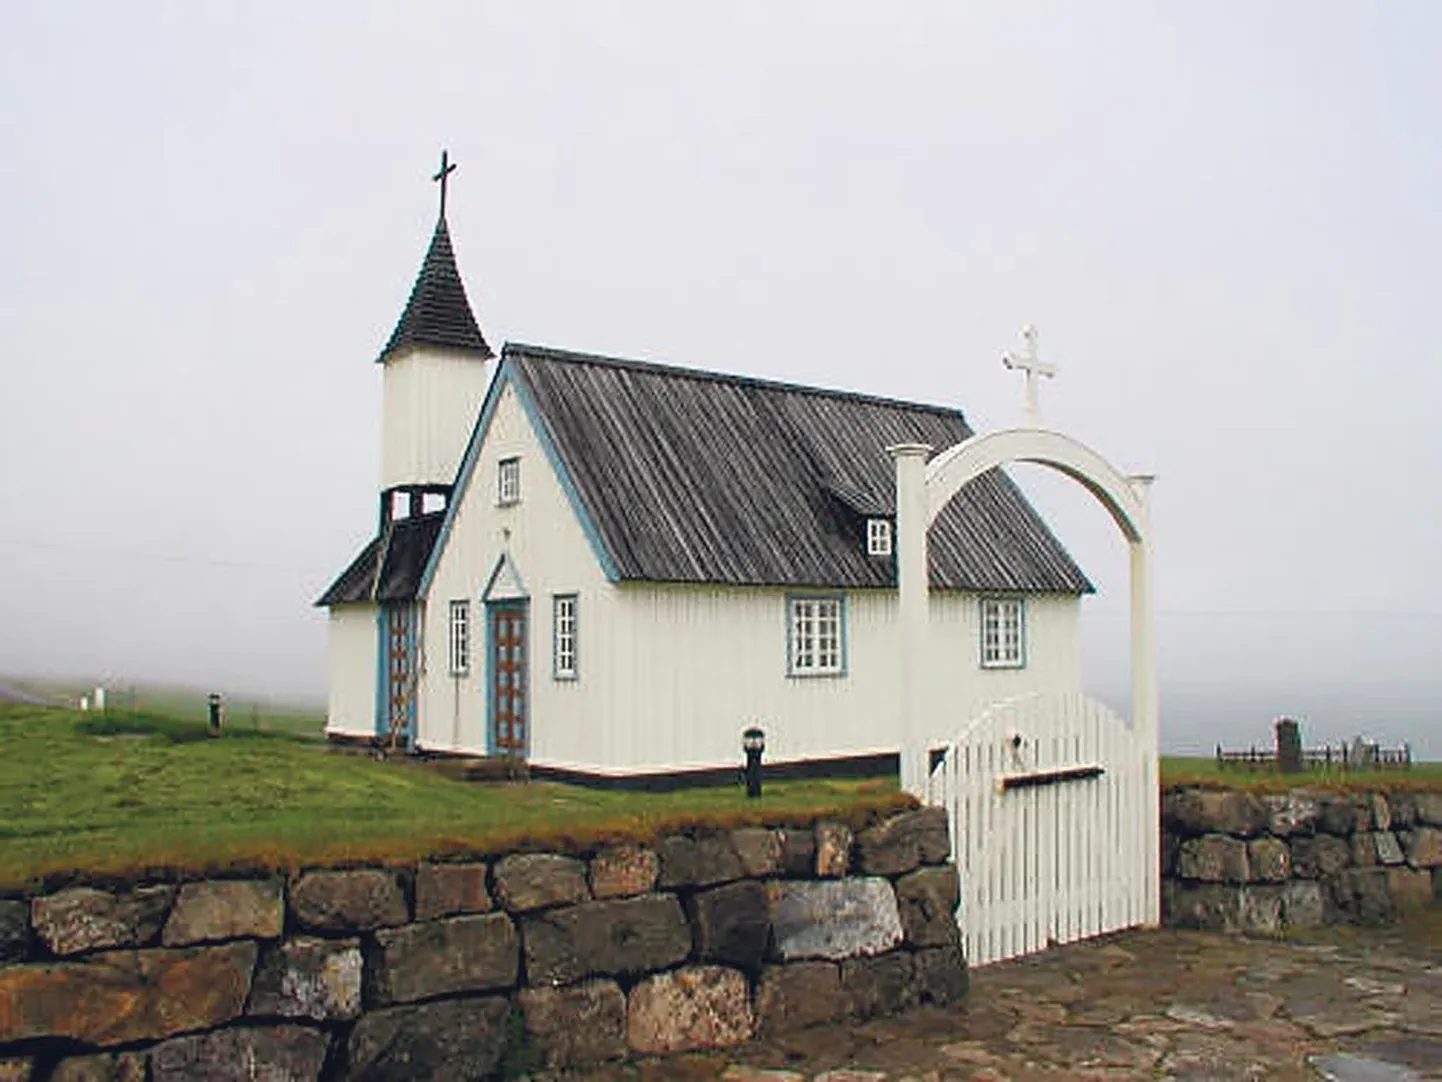 Skeggjastaðiri peetakse Islandi vanimaks puukirikuks, mis ehitati 1845 ja mille altarimaal on 1857. aastast.